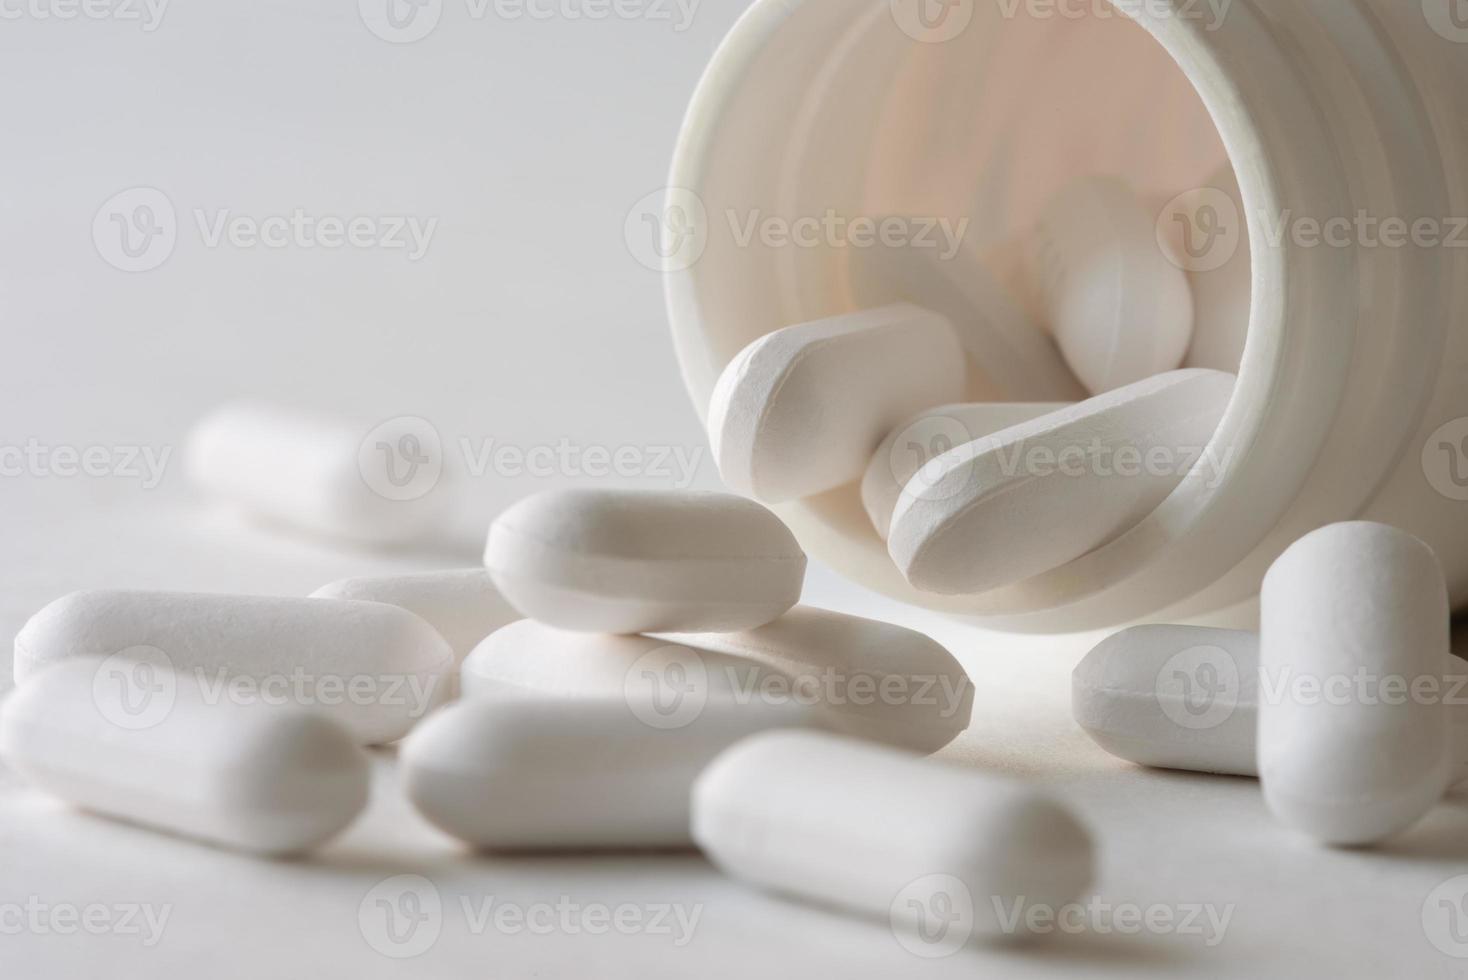 Acetaphetamine Tablets Spilled from the Bottle photo